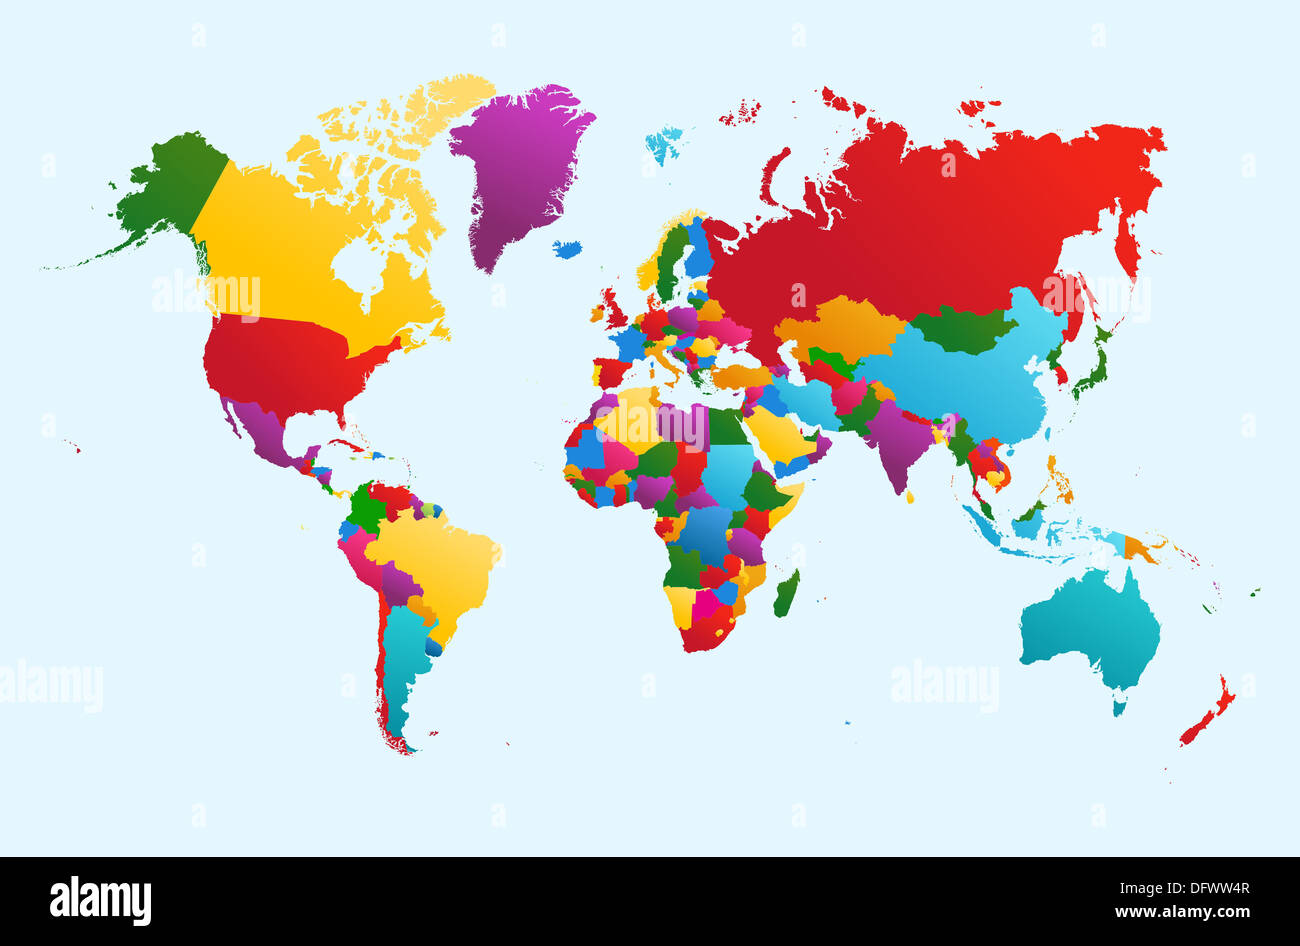 Weltkarte, bunten Ländern Atlas Abbildung. EPS10 Vektor-Datei organisiert in Schichten für die einfache Bearbeitung. Stockfoto